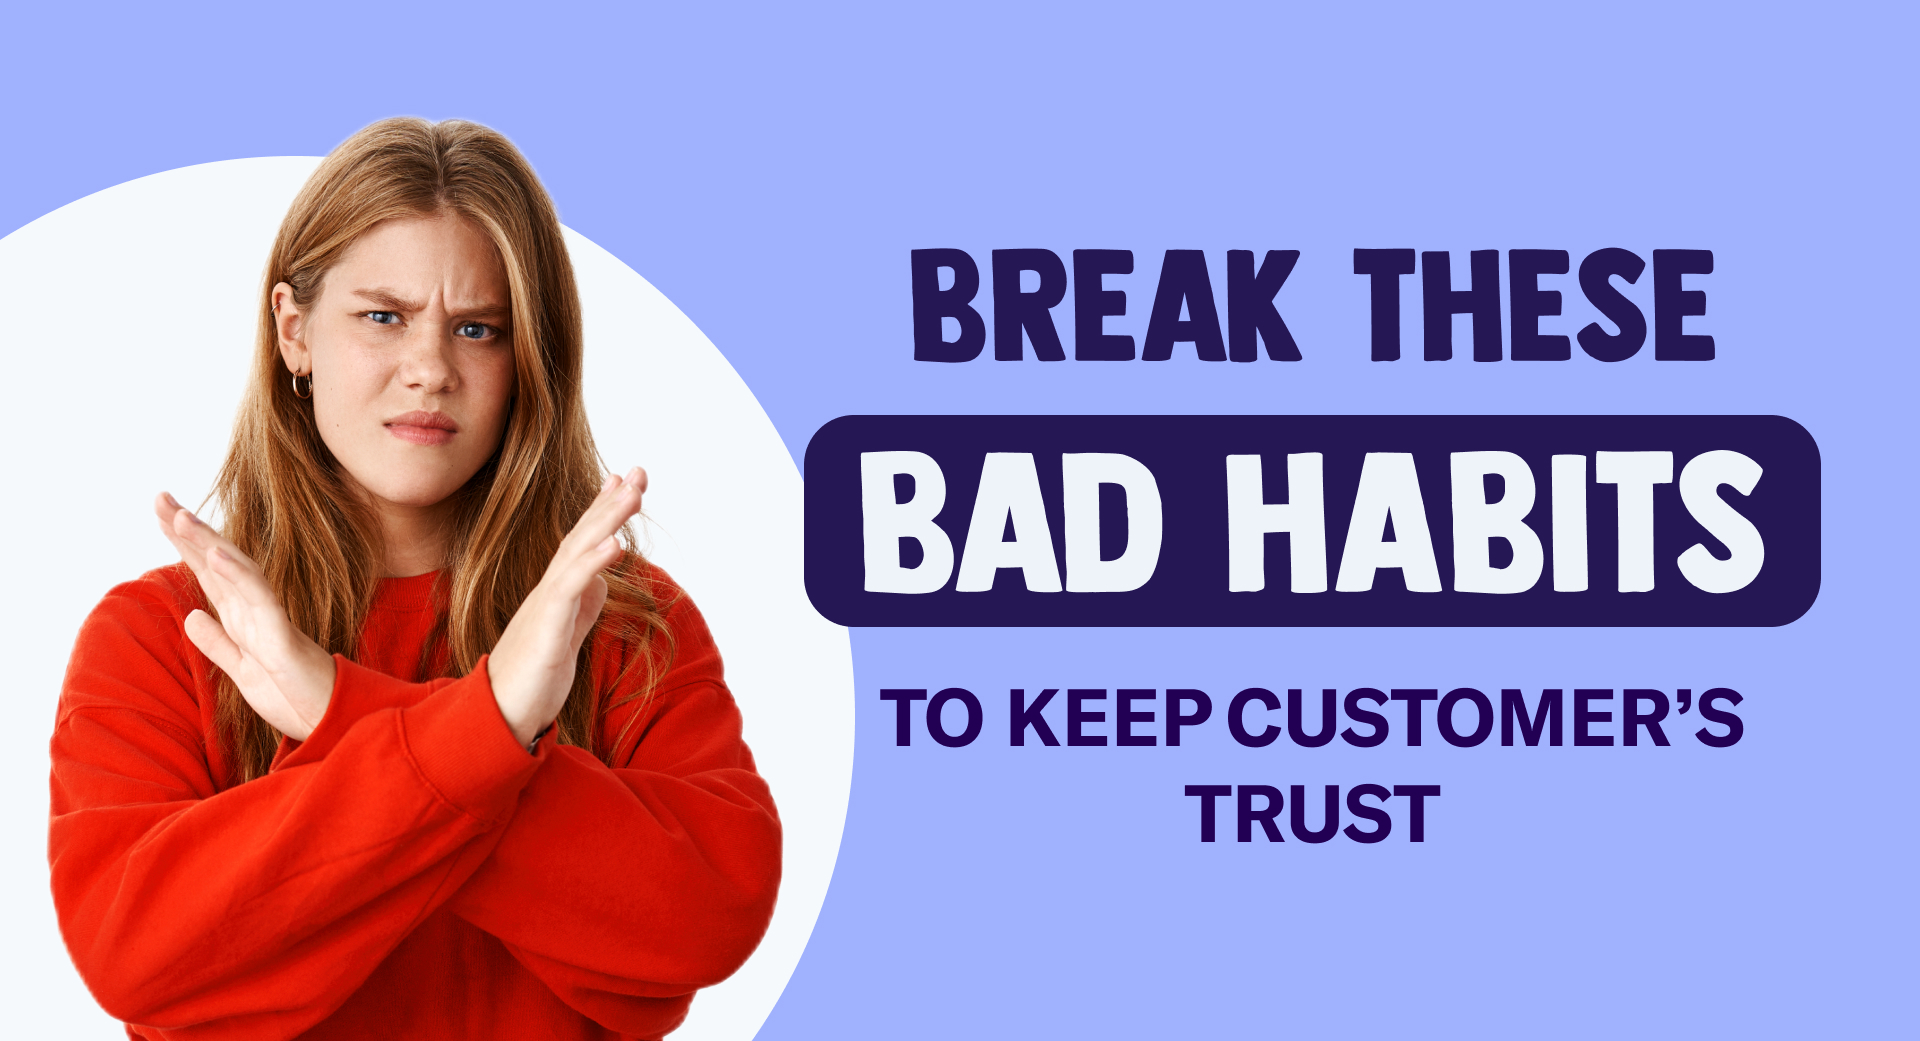 Brisez ces mauvaises habitudes pour garder la confiance du client